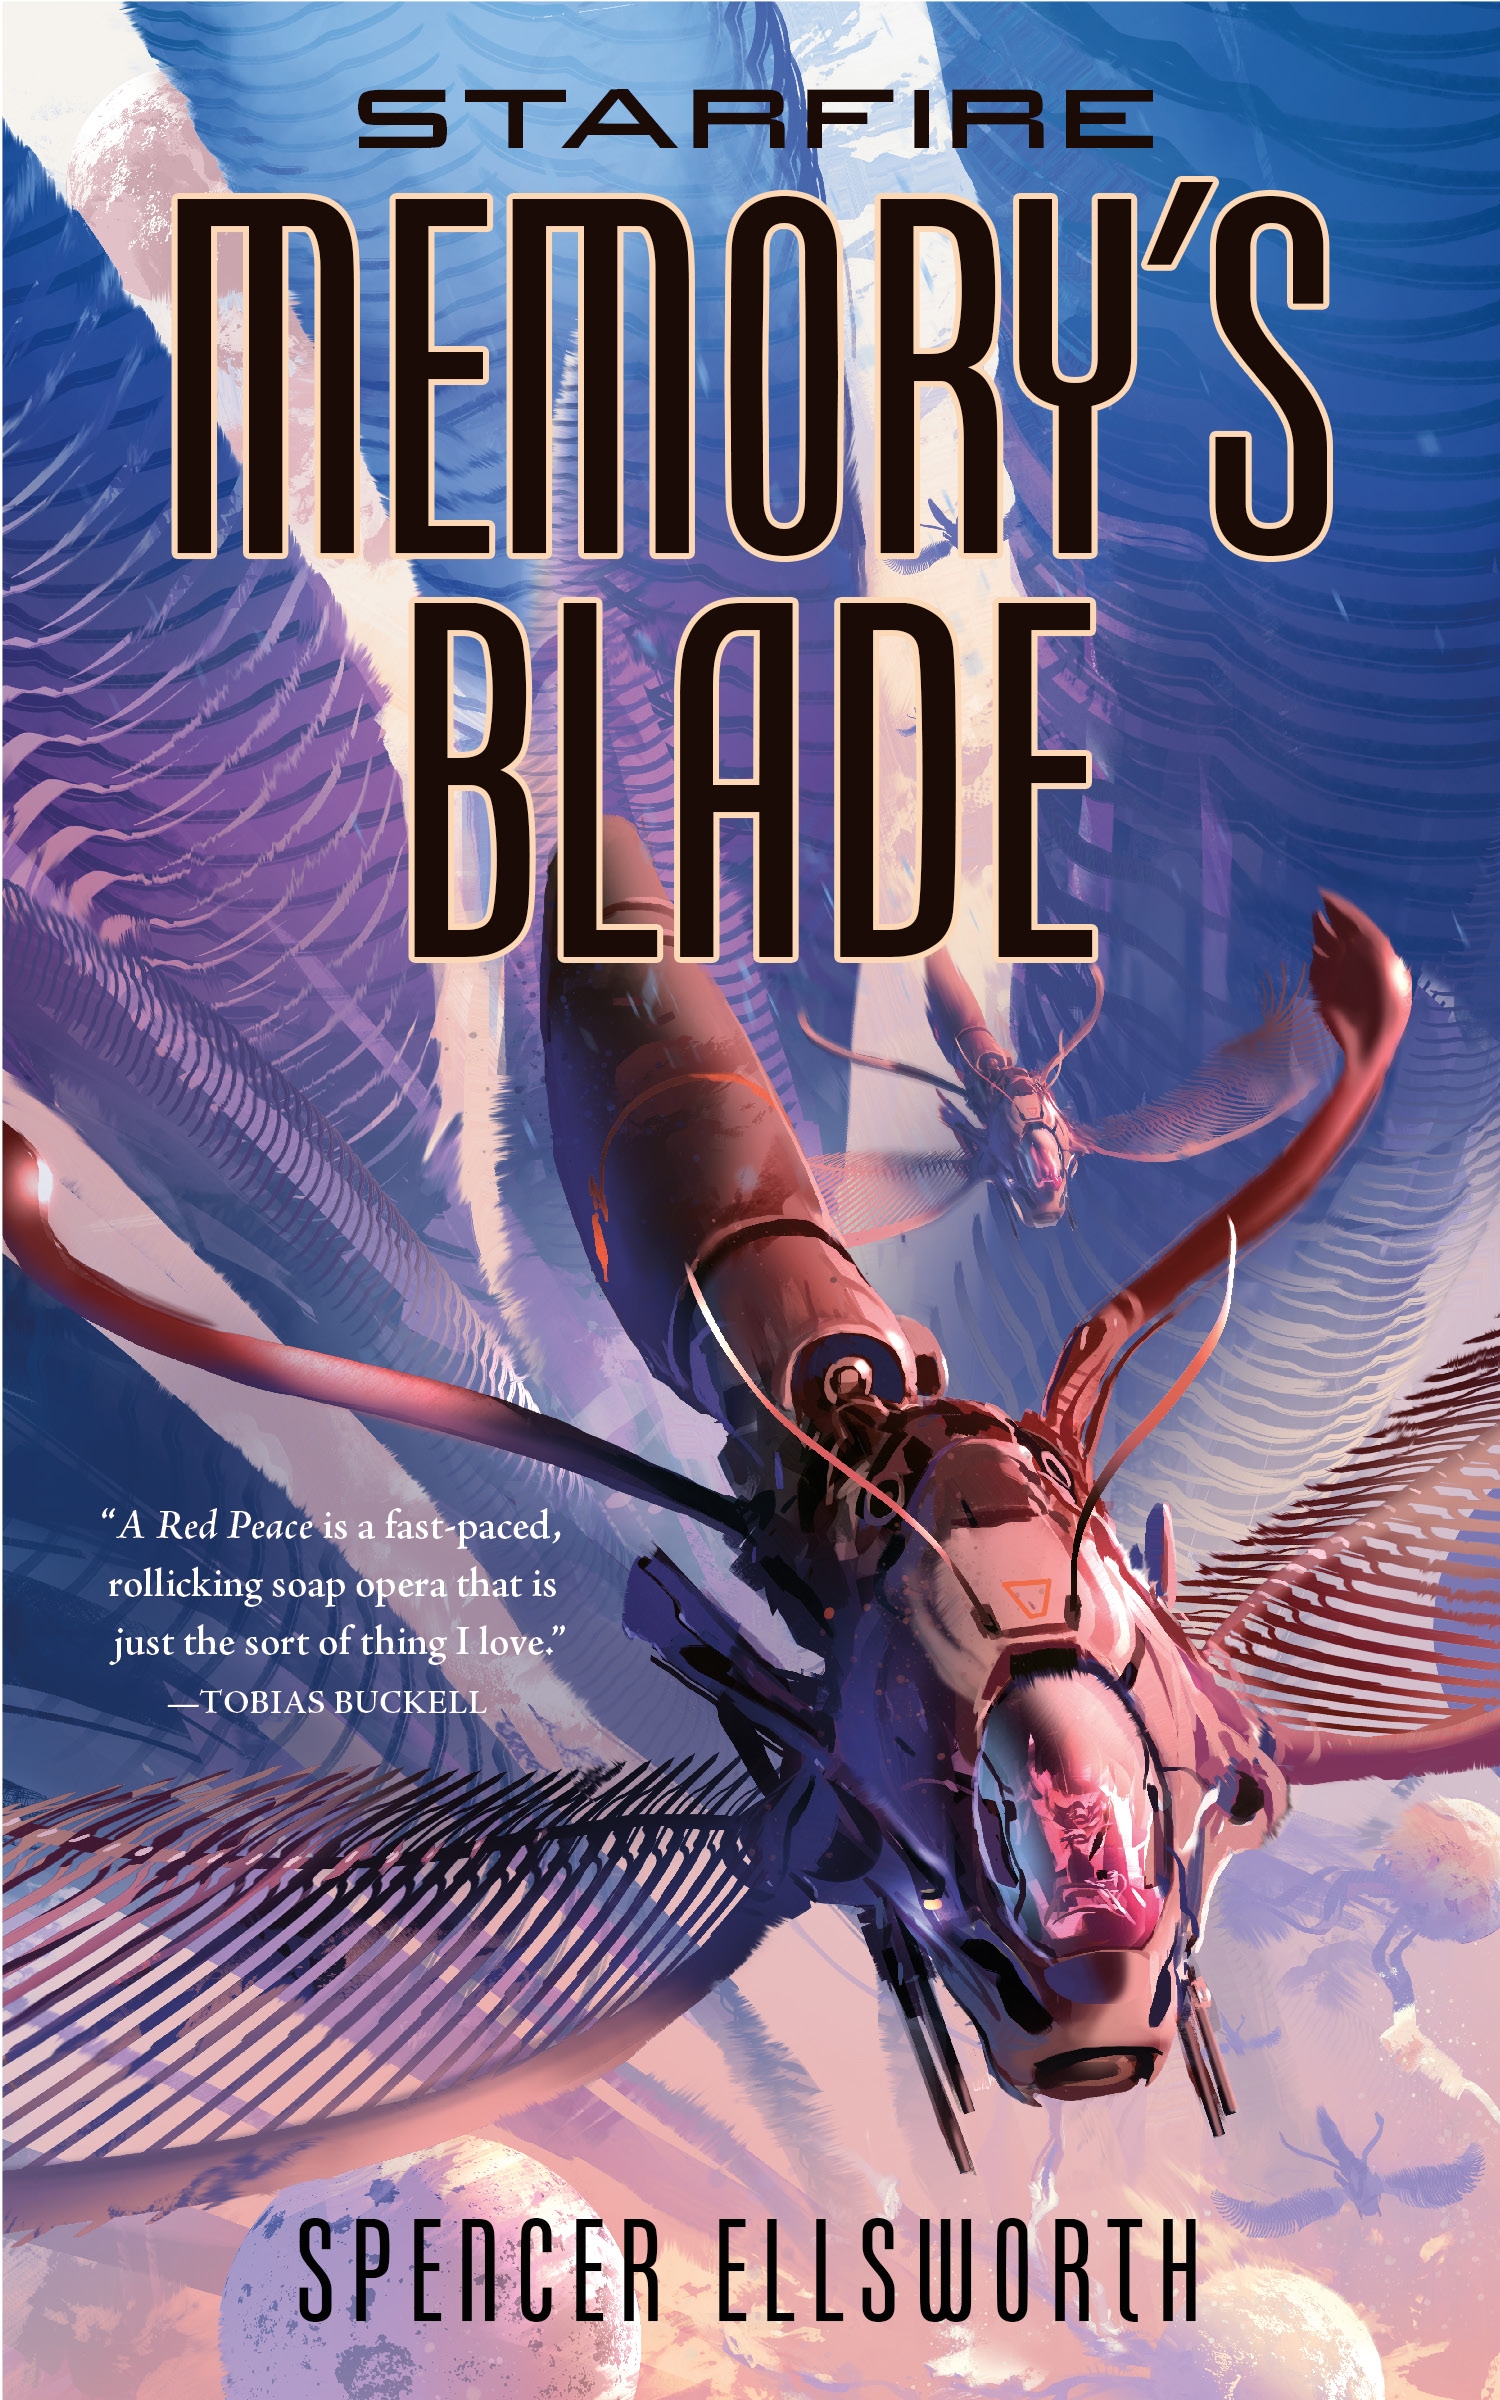 Starfire: Memory's Blade by Spencer Ellsworth